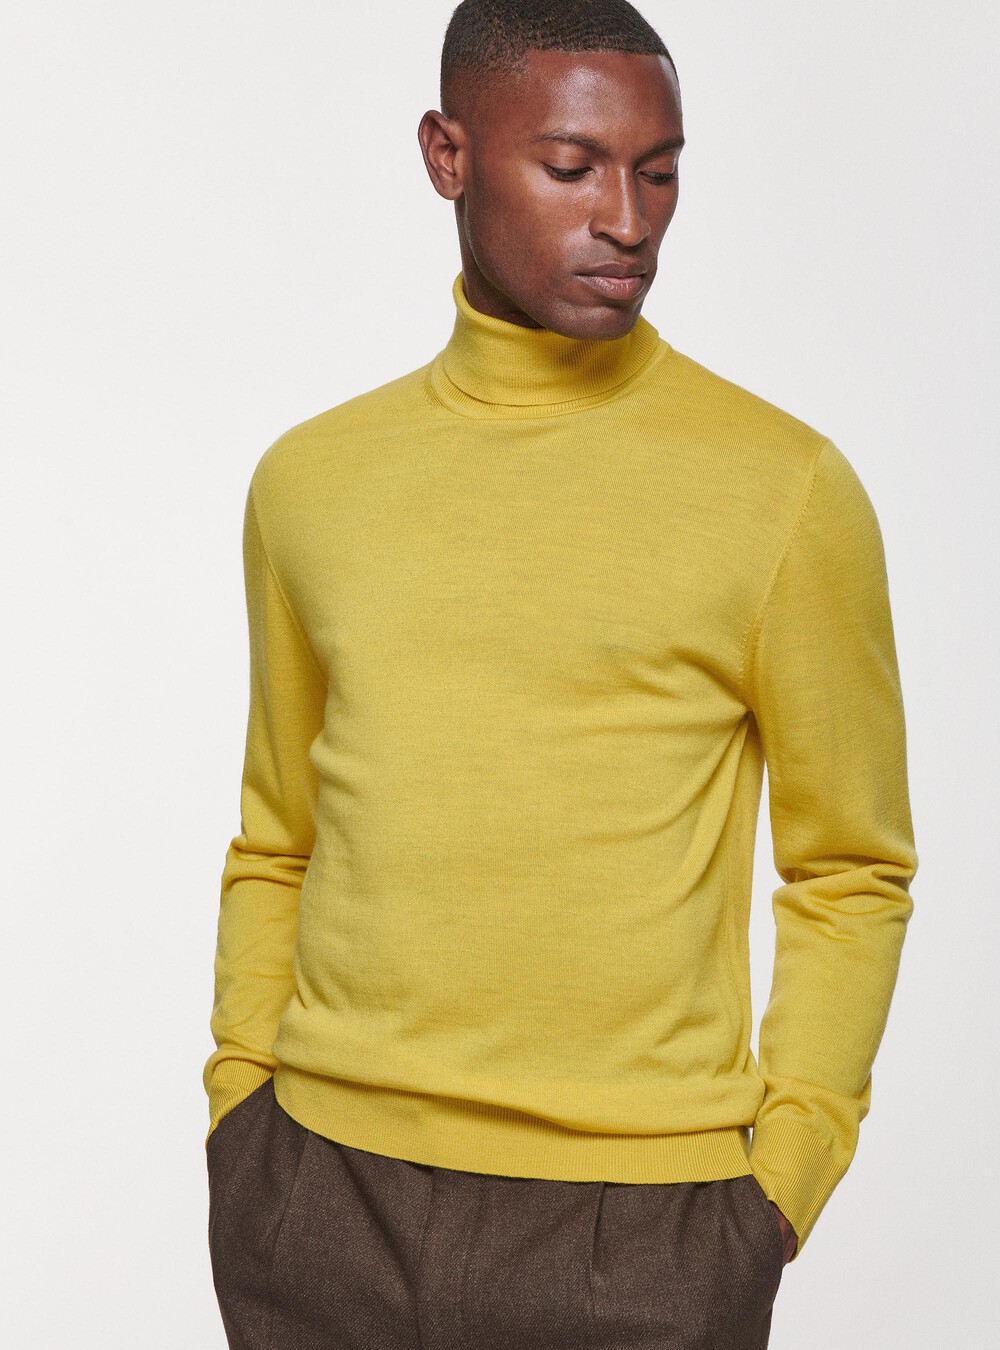 Turtleneck in pure merino wool | GutteridgeUS | Men's Sweaters